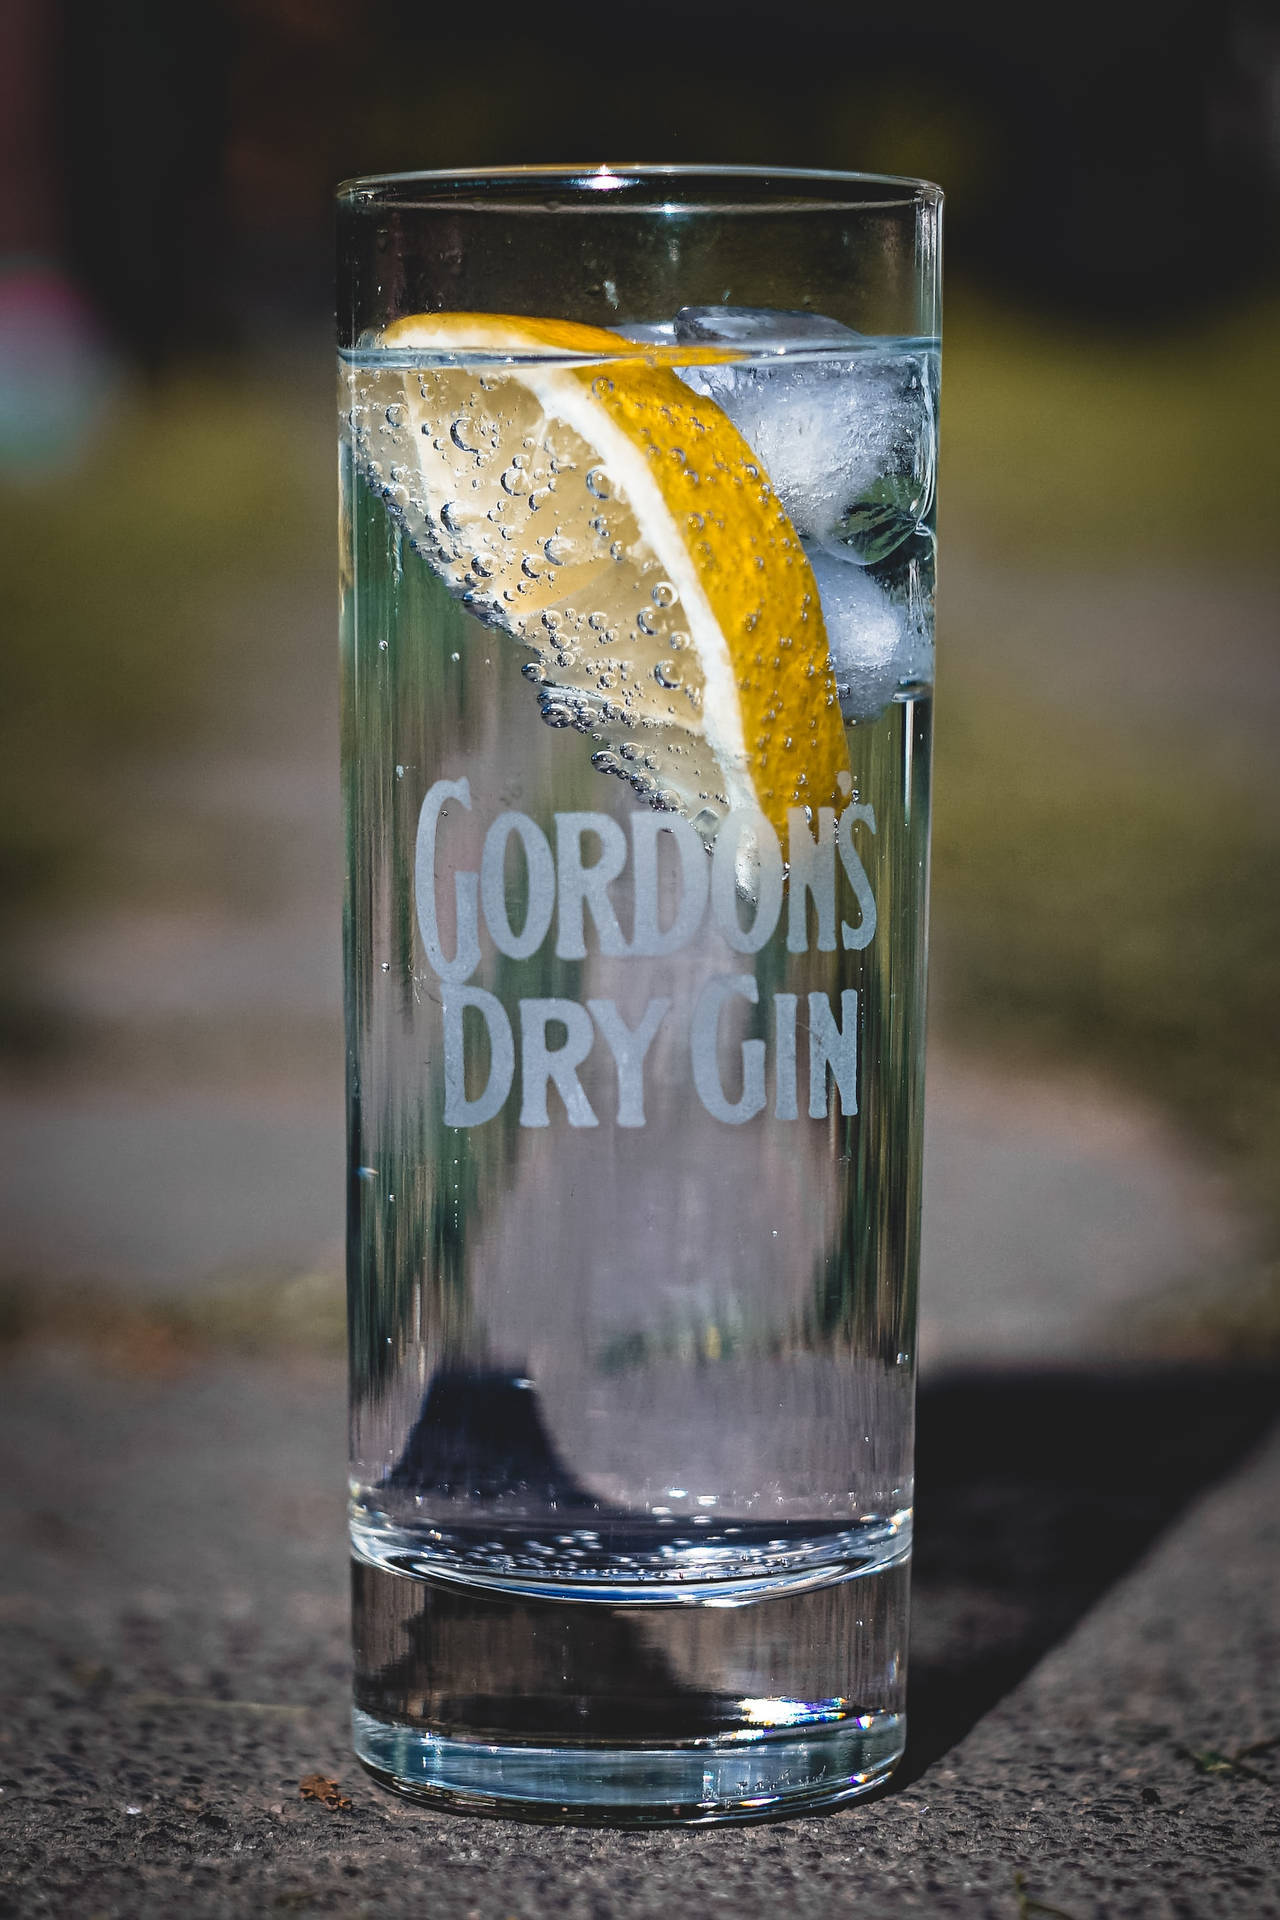 Gordon's Dry Gin Glass With Lemon Wallpaper